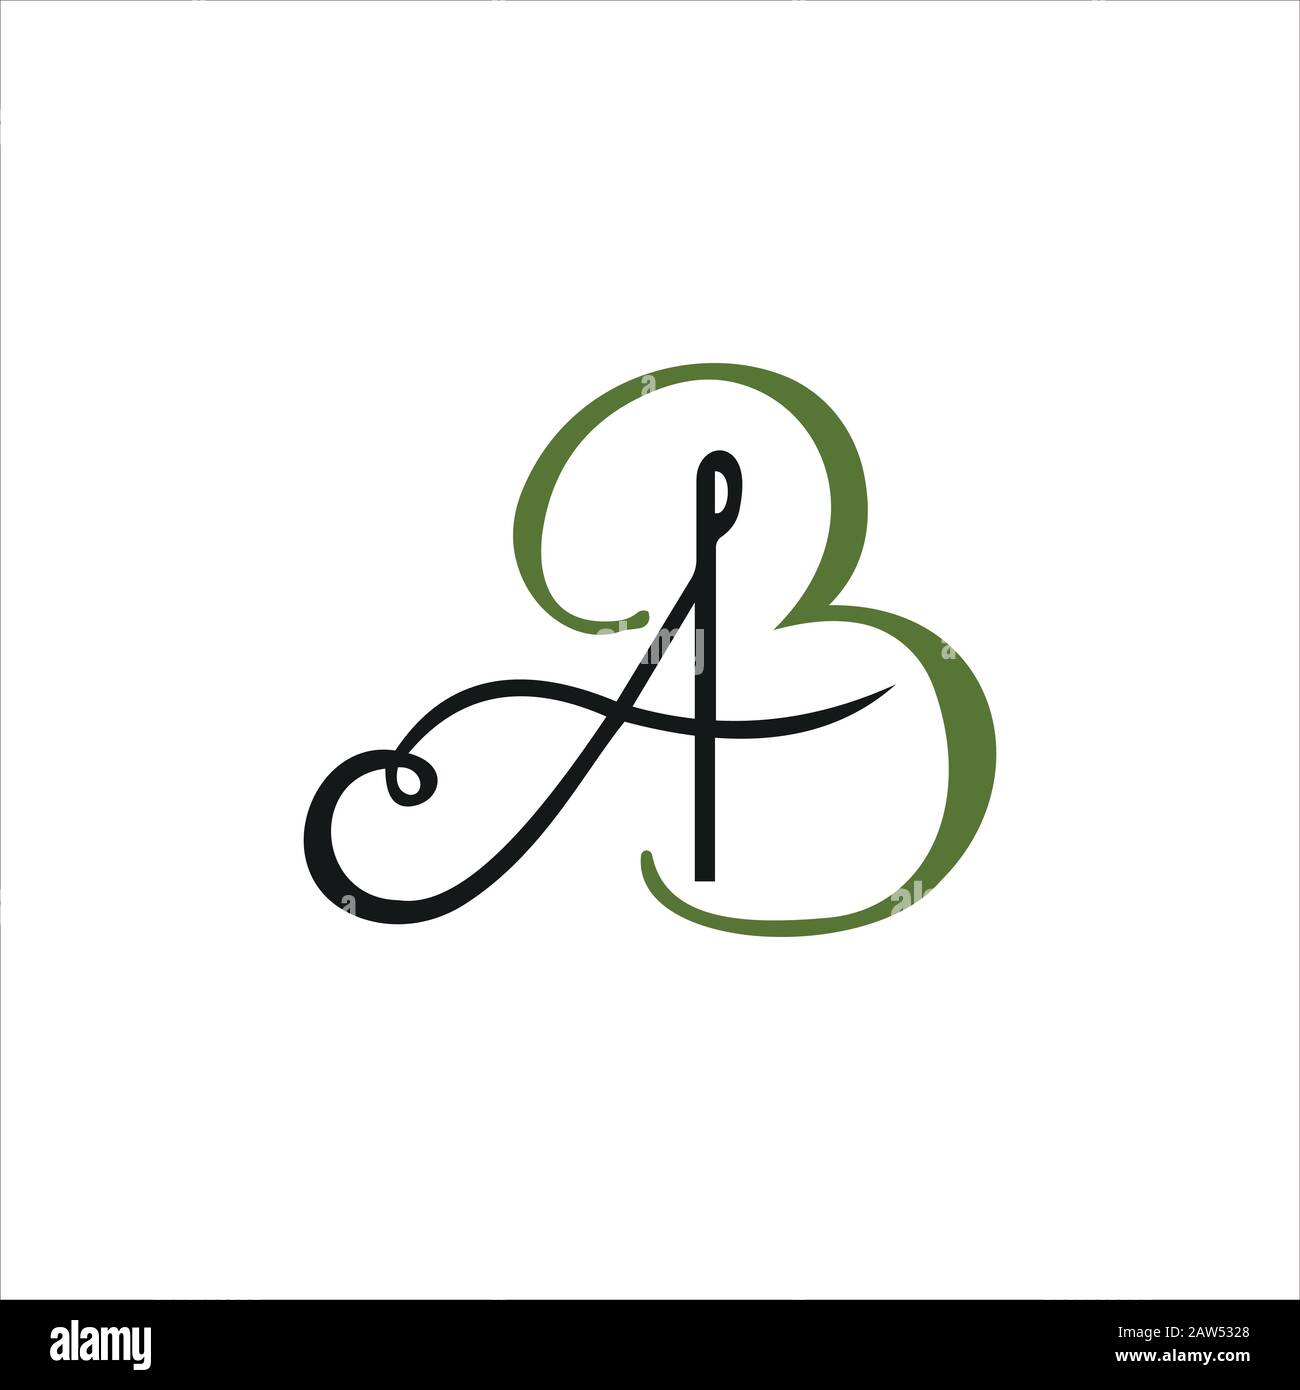 ab logo design